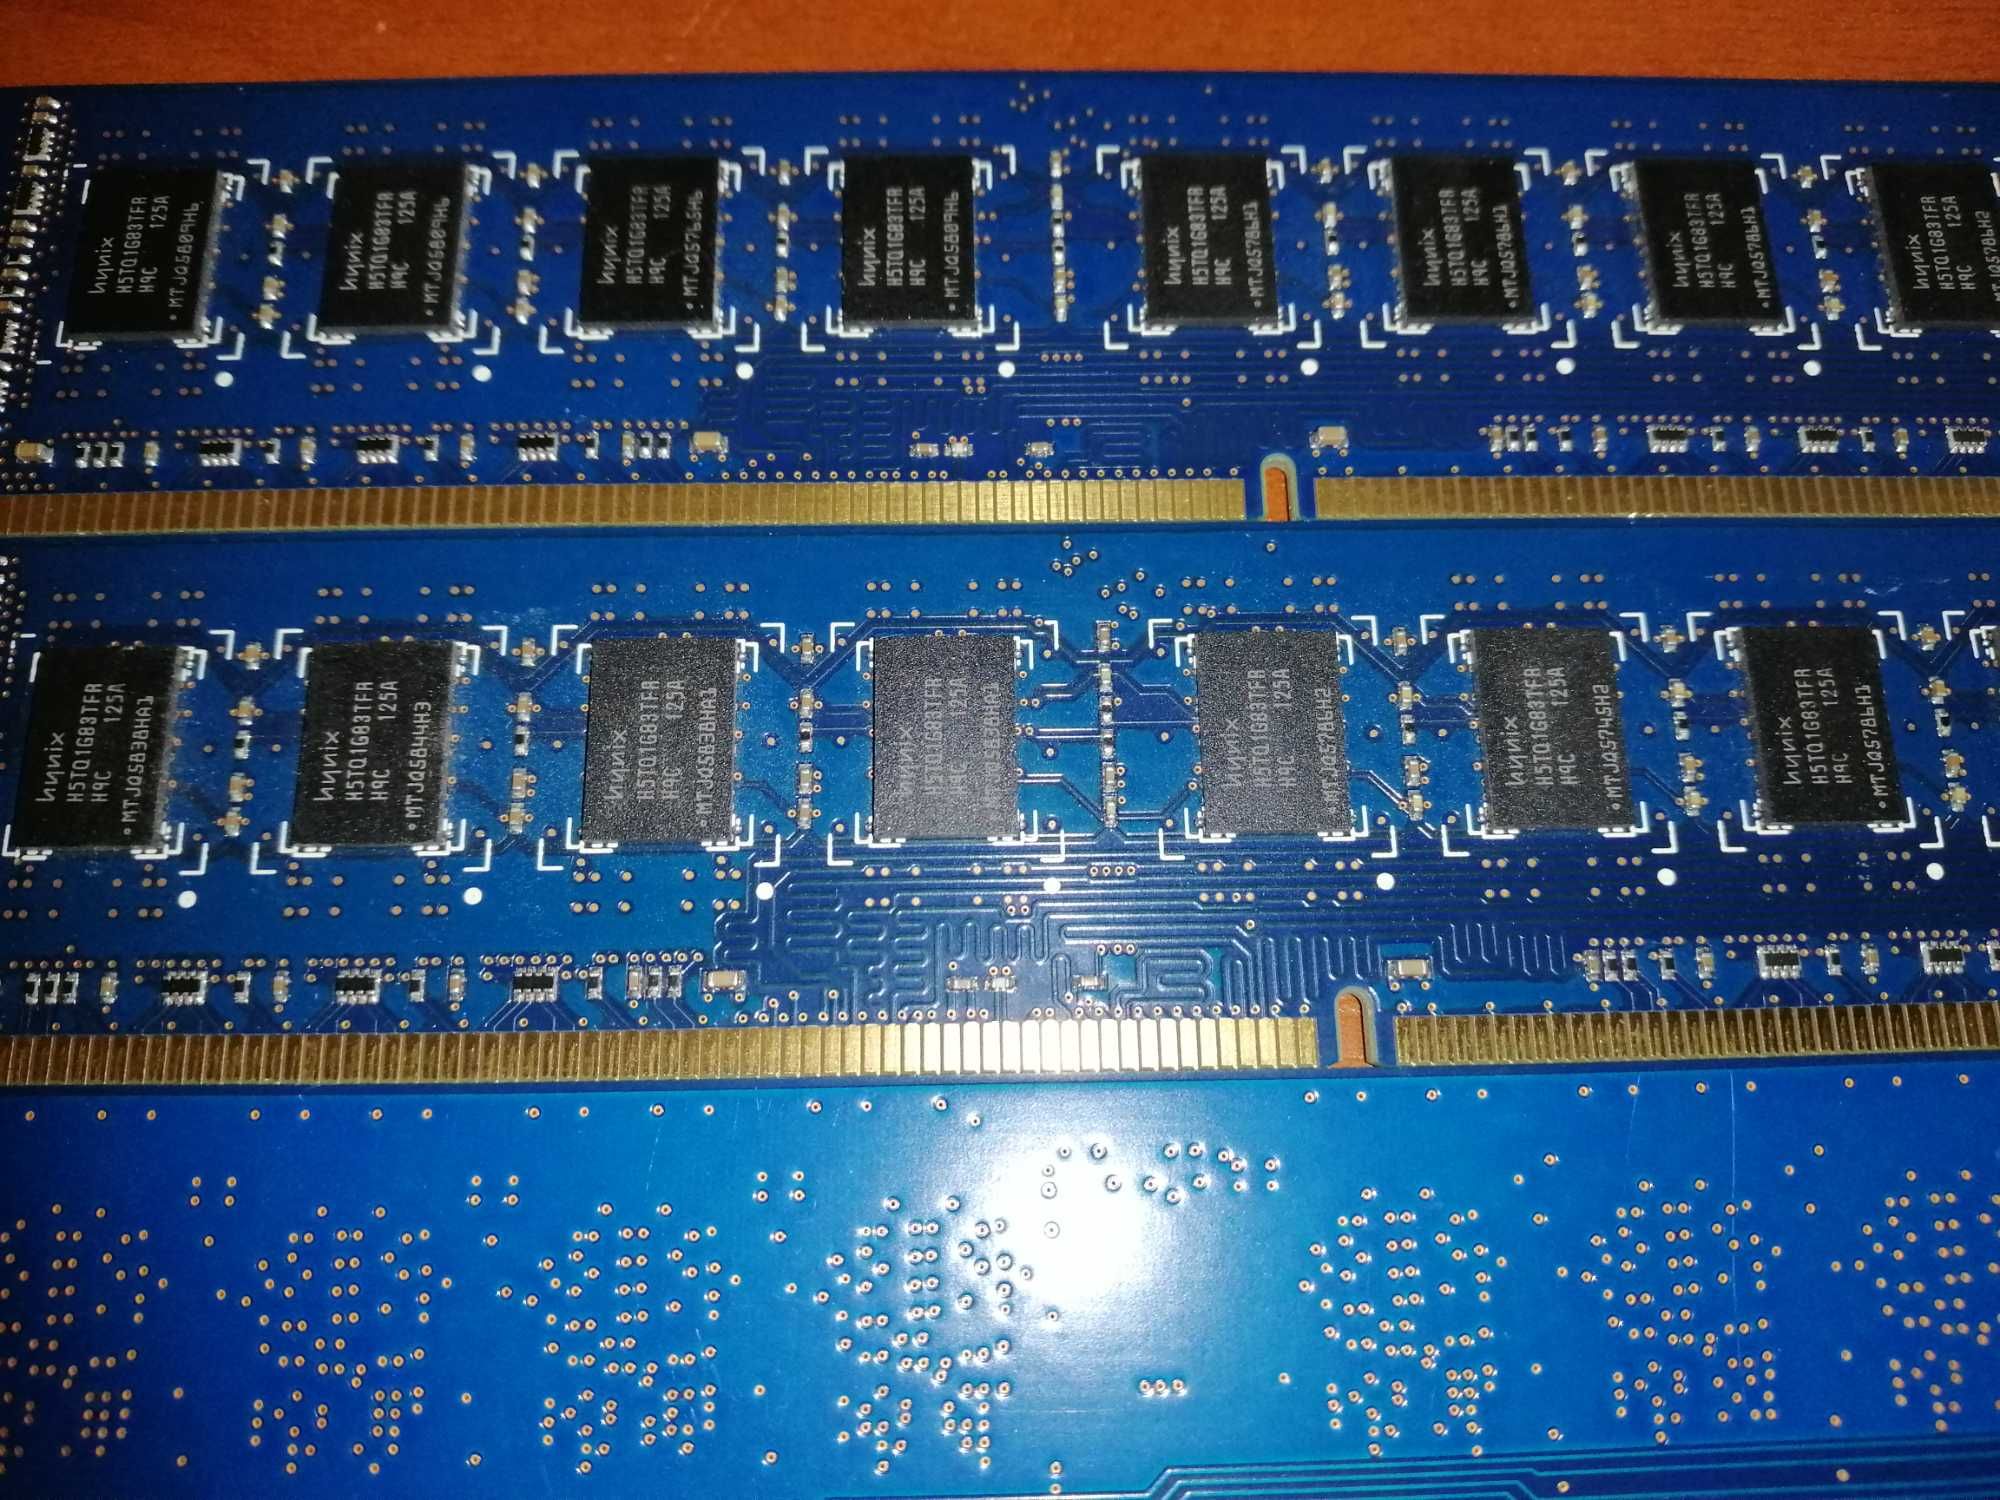 Память DDR3 2Gb Hunix 10600 частотой 1333MHz